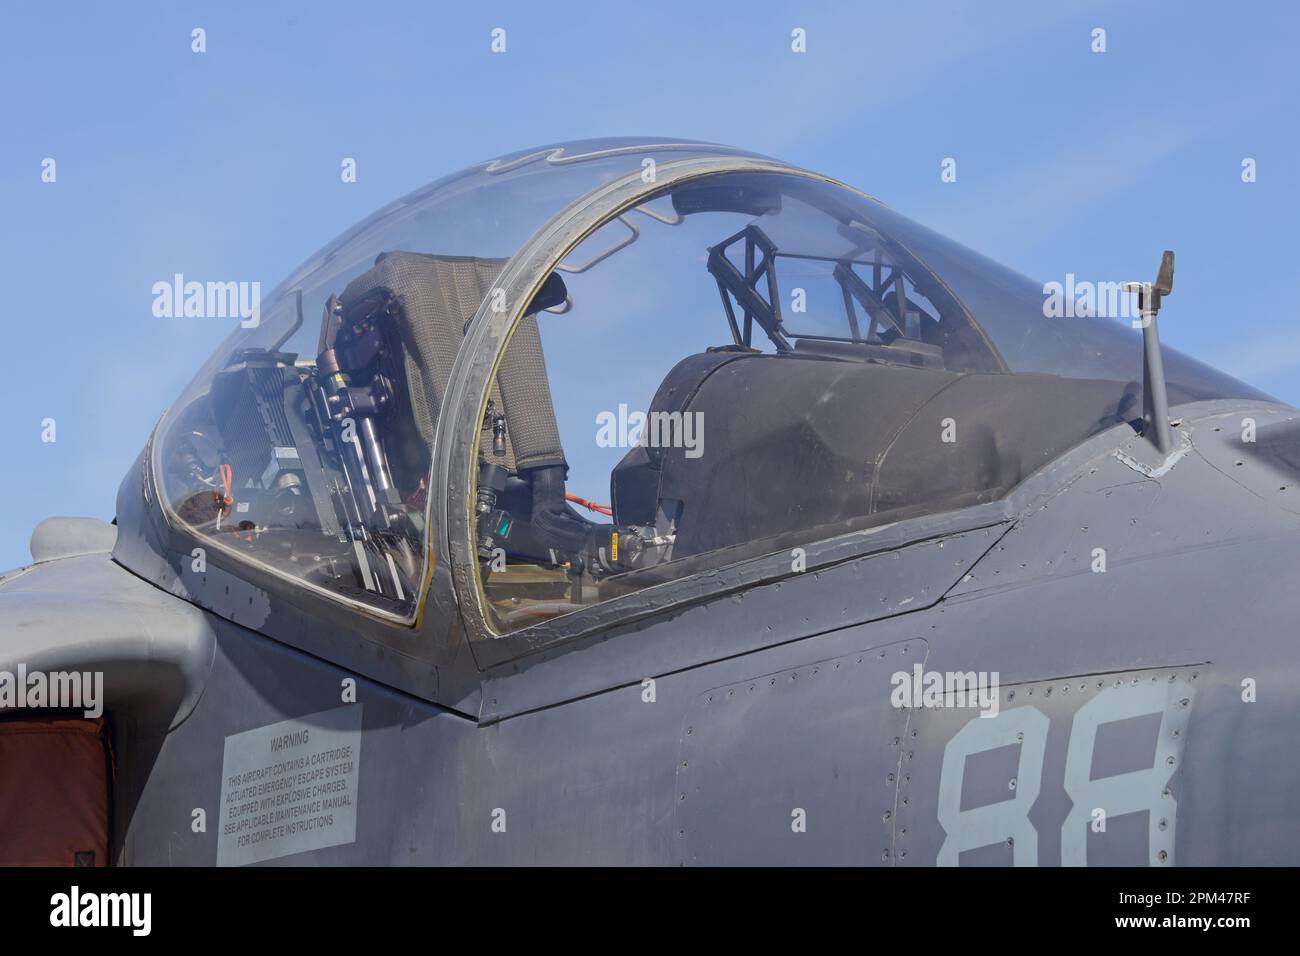 Das Cockpit und das Glasdach eines modernen Kampfjet-Angriffsflugzeugs werden während des Tages aus nächster Nähe gezeigt. Mit blauem Himmel im Hintergrund. Stockfoto